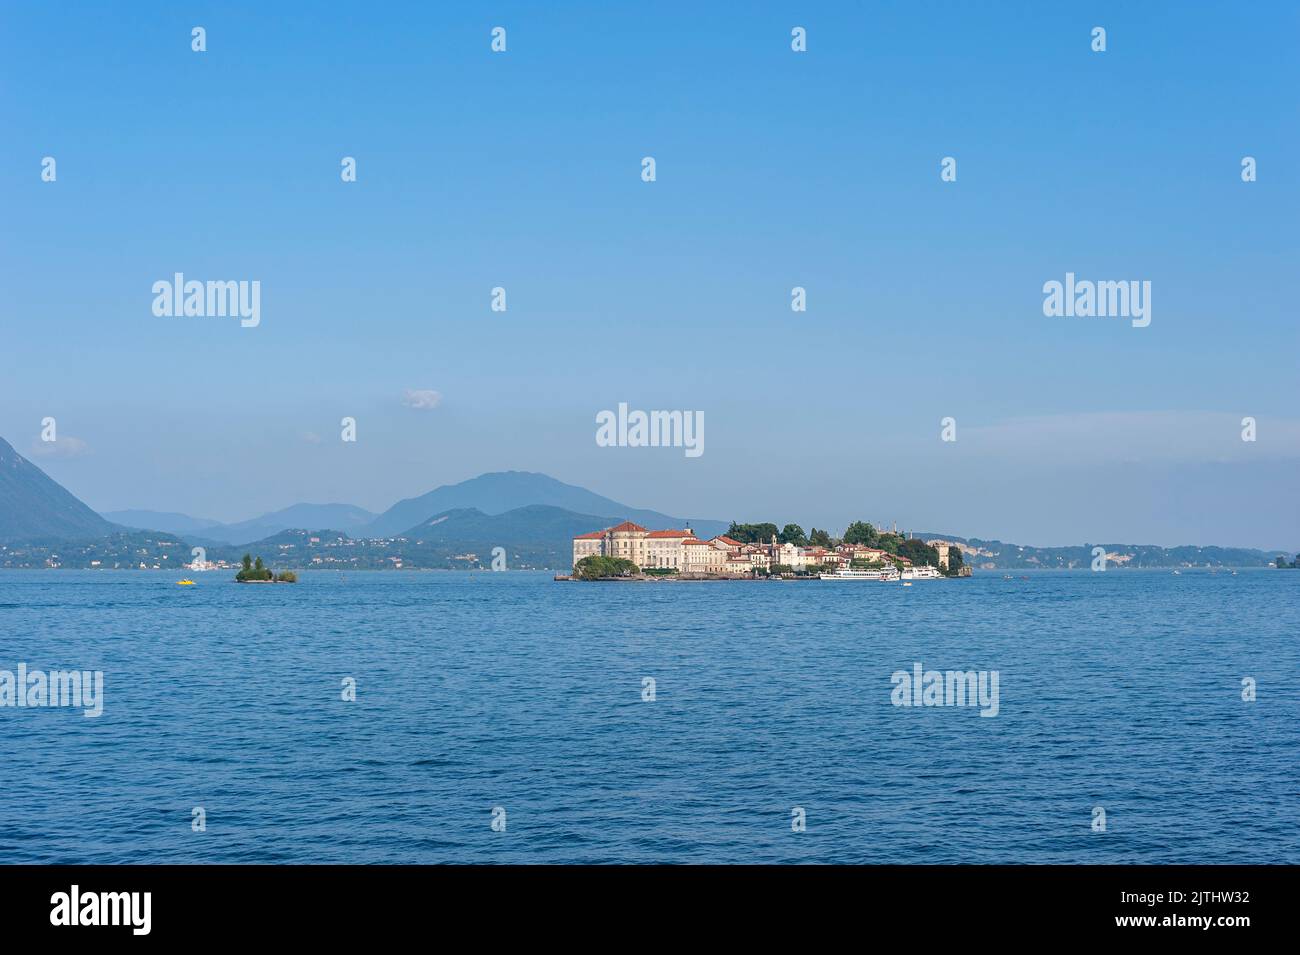 View over Lake Maggiore to Isola Bella, Stresa, Lake Maggiore, Piedmont, Italy, Europe Stock Photo